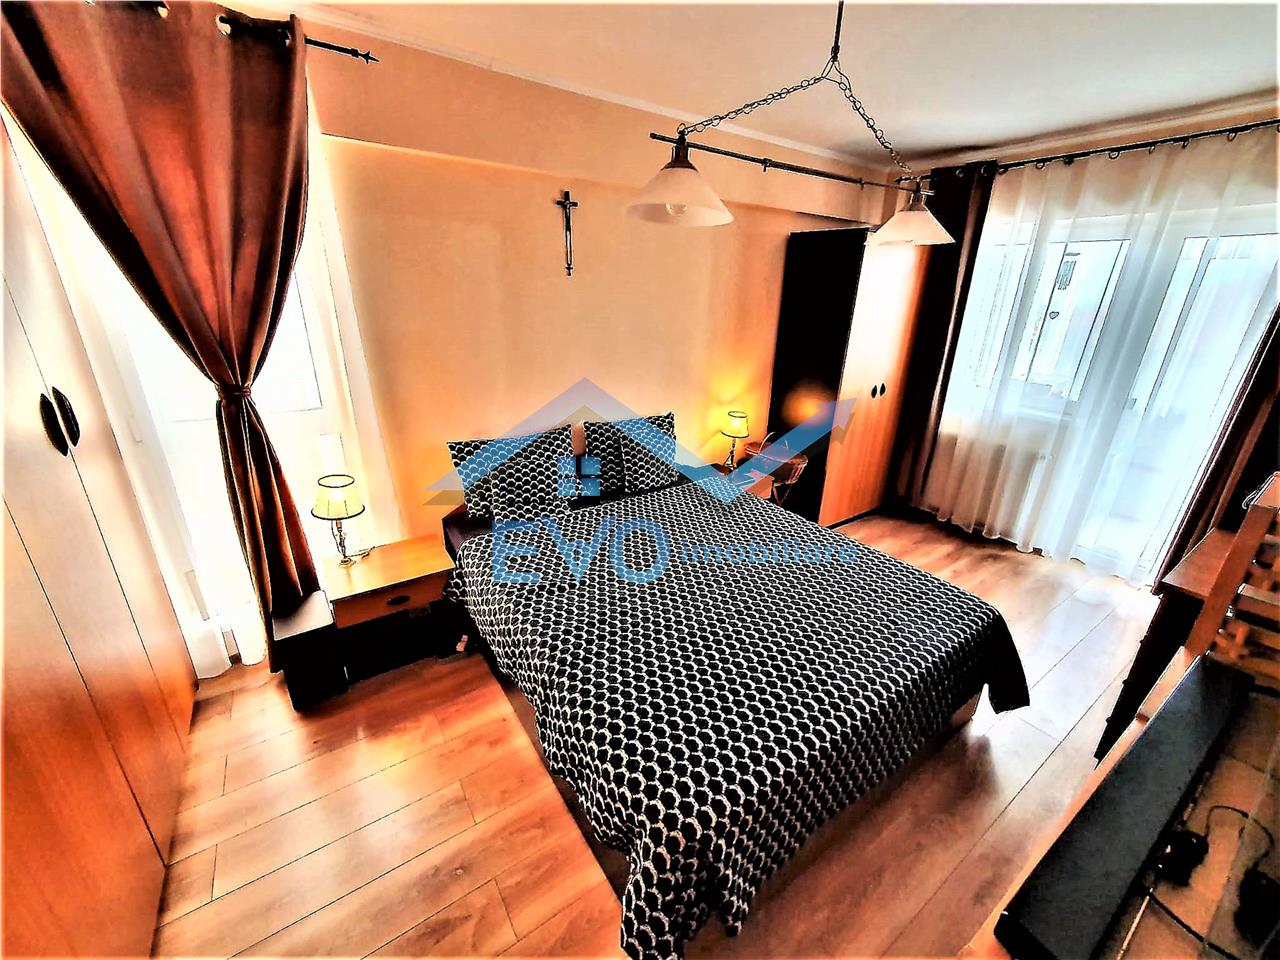 Vanzare apartament 2 camere, decomandat, et 1, bloc 2015, Galata